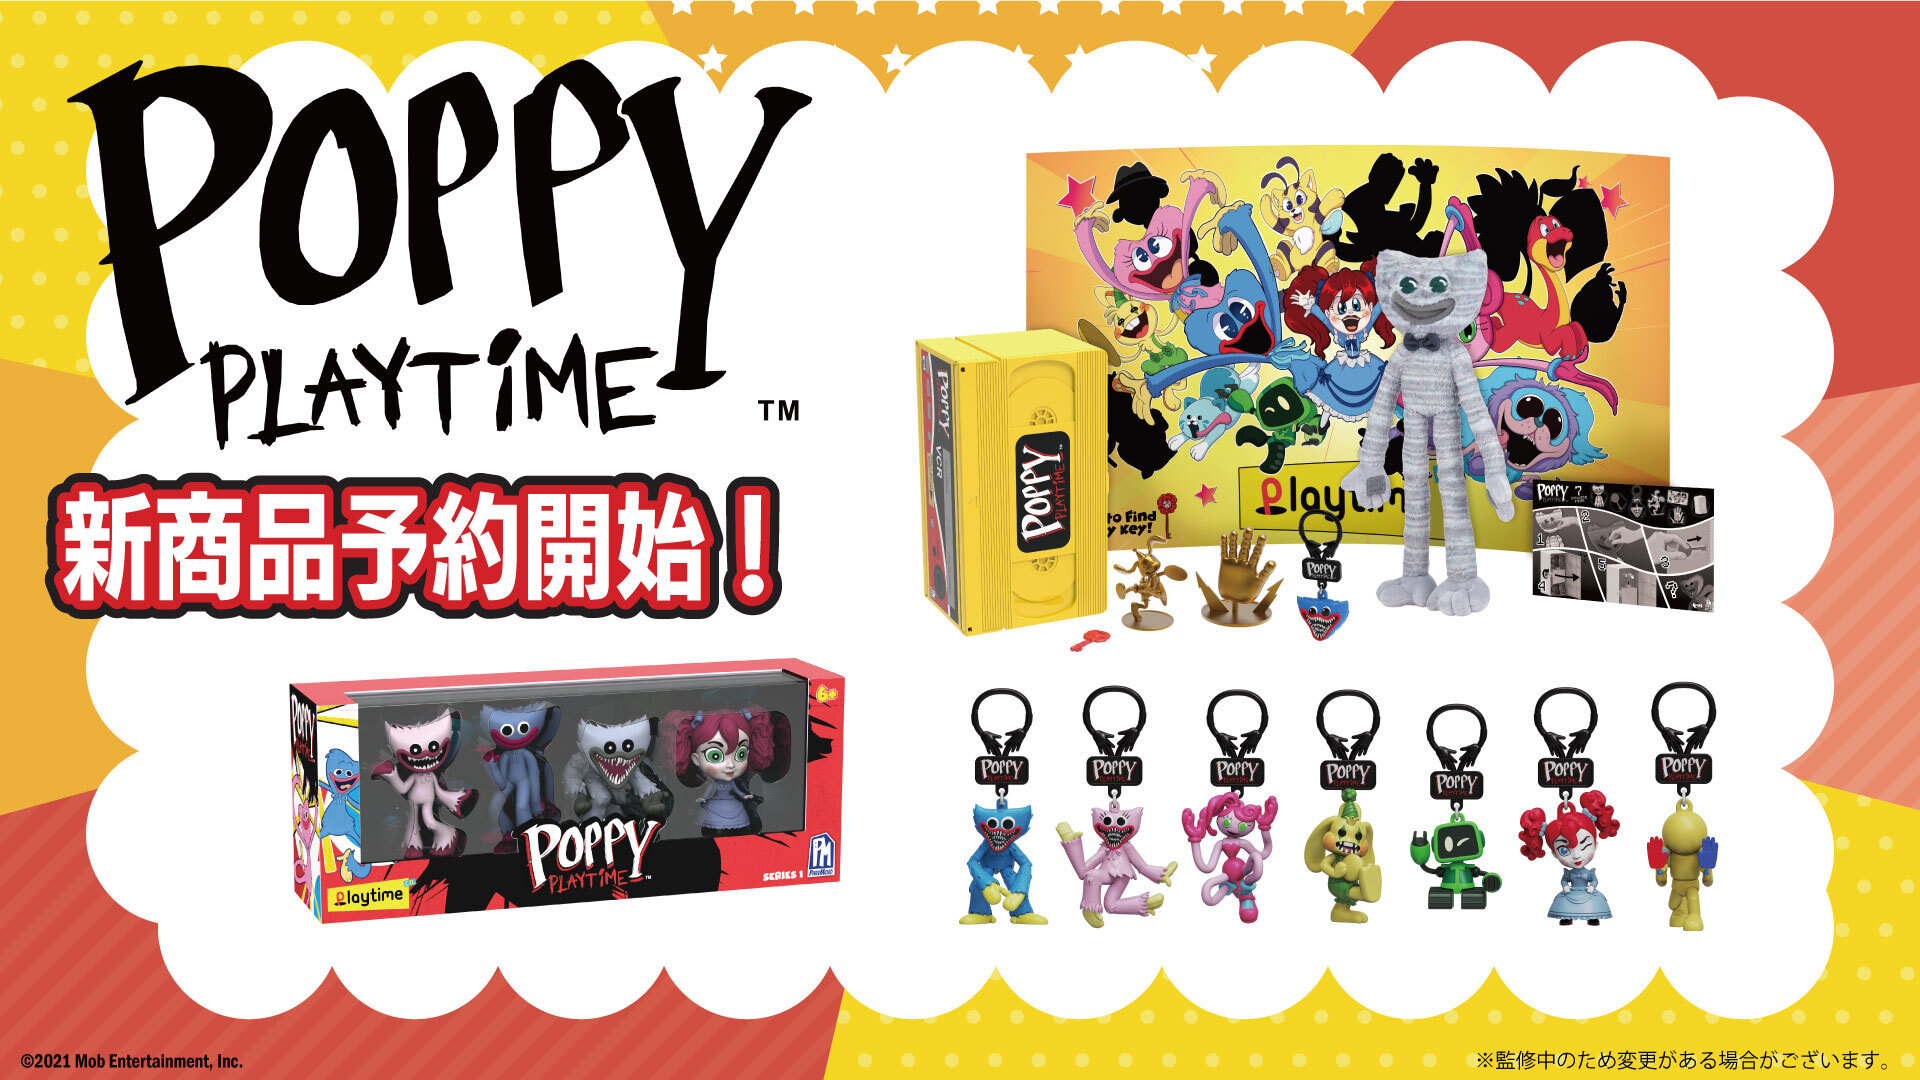 大人気ホラーゲーム「Poppy Playtime」
楽しいギミック付き！ビデオテープBOXほか、
新商品3種が発売決定！